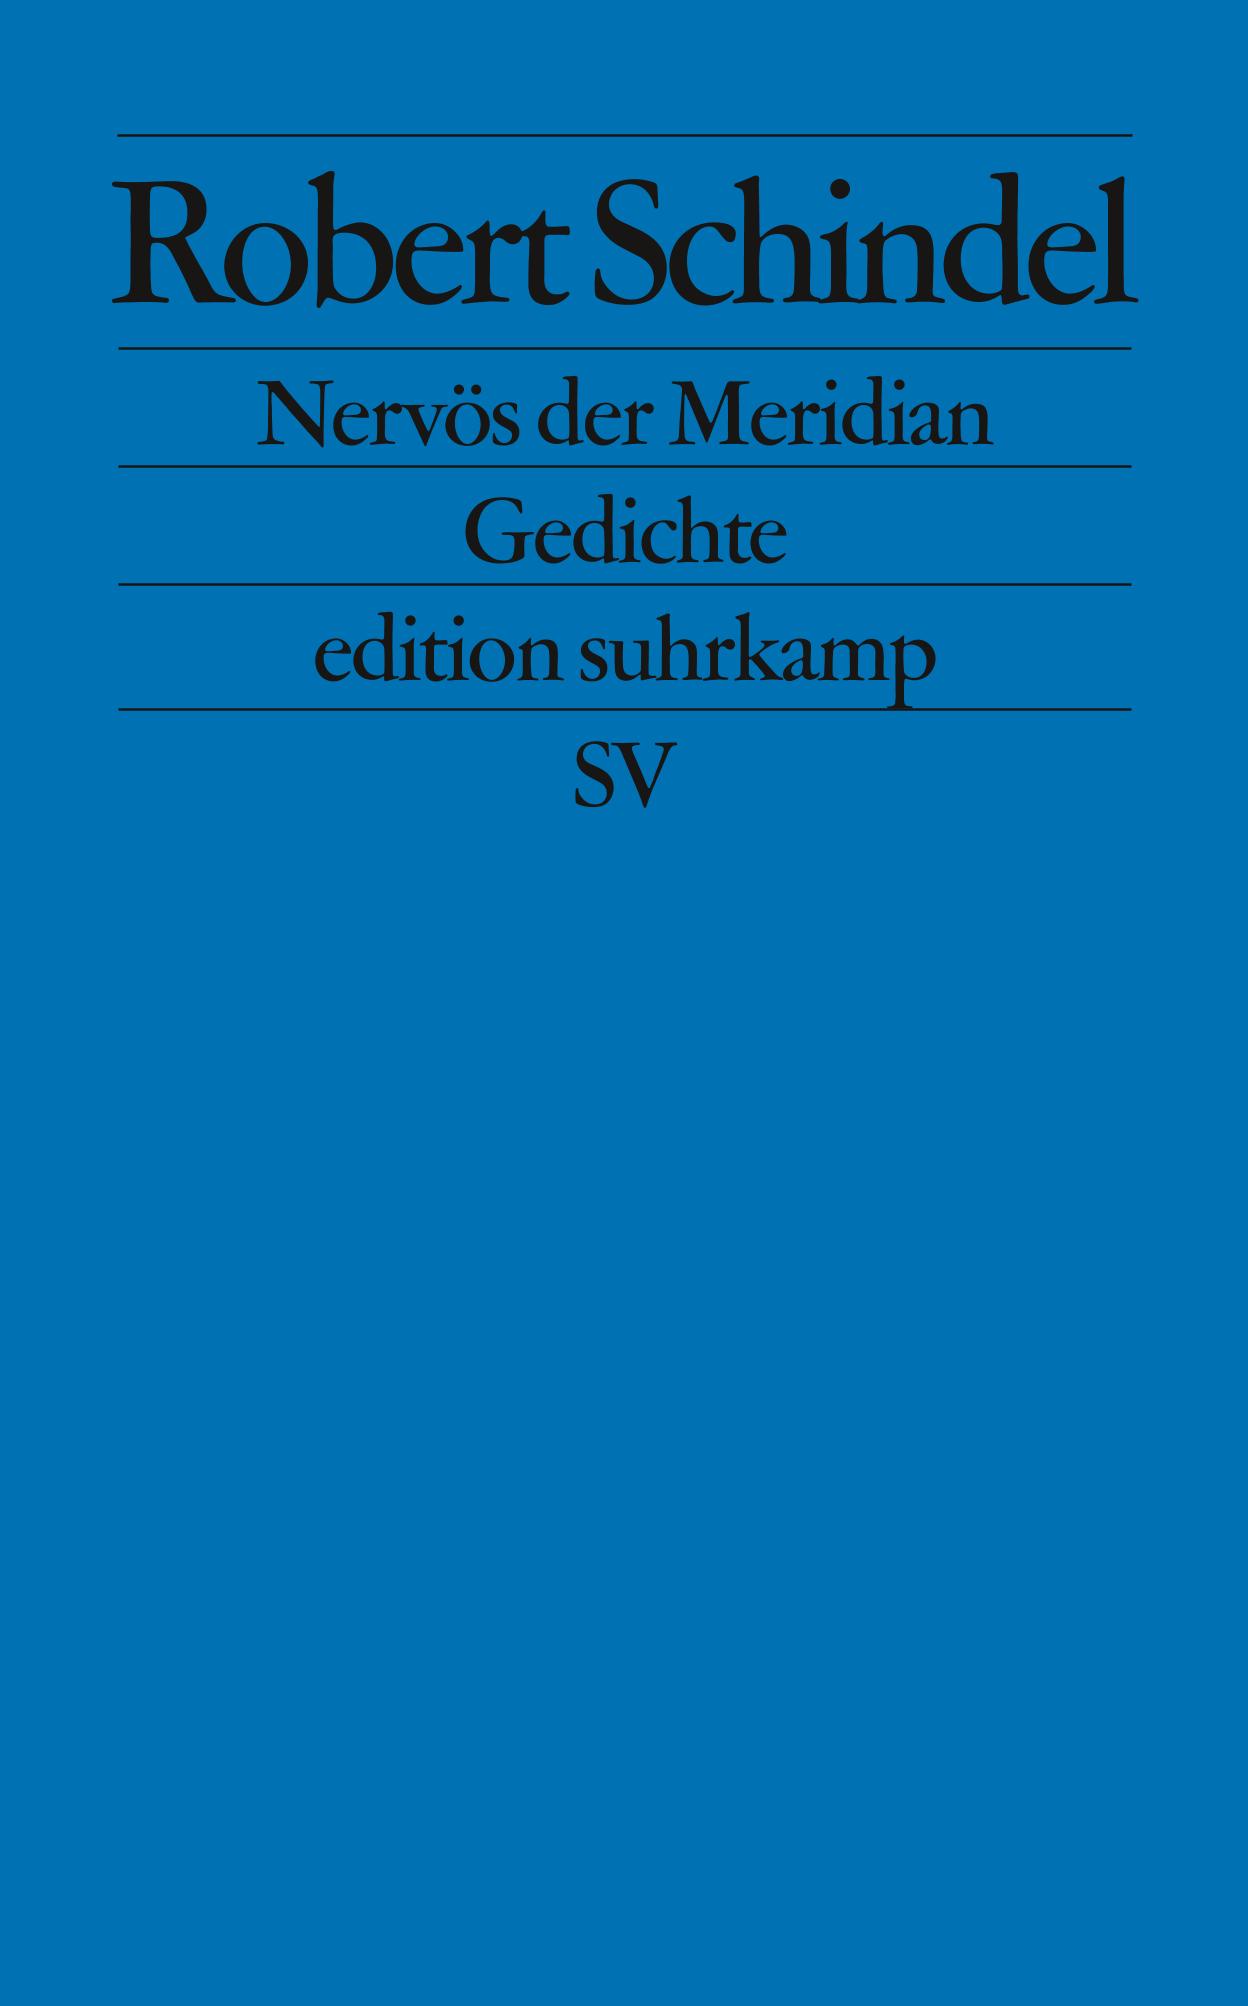 Robert Schindel / Nervös der Meridian - Bild 1 von 1